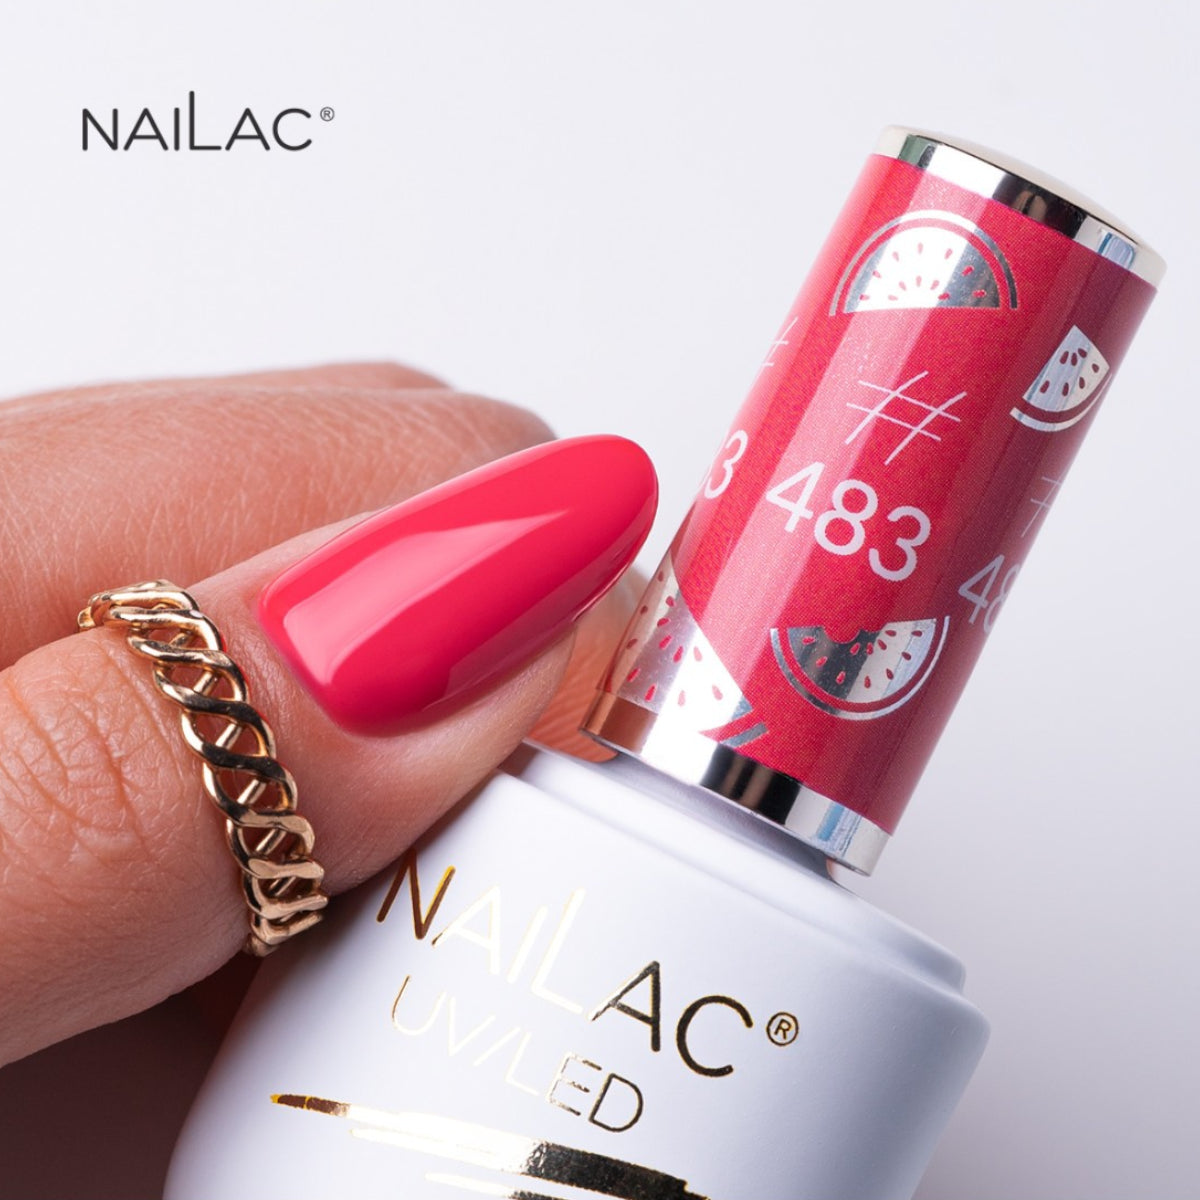 NaiLac UV/LED Gel Nail Polish 483 Swatch